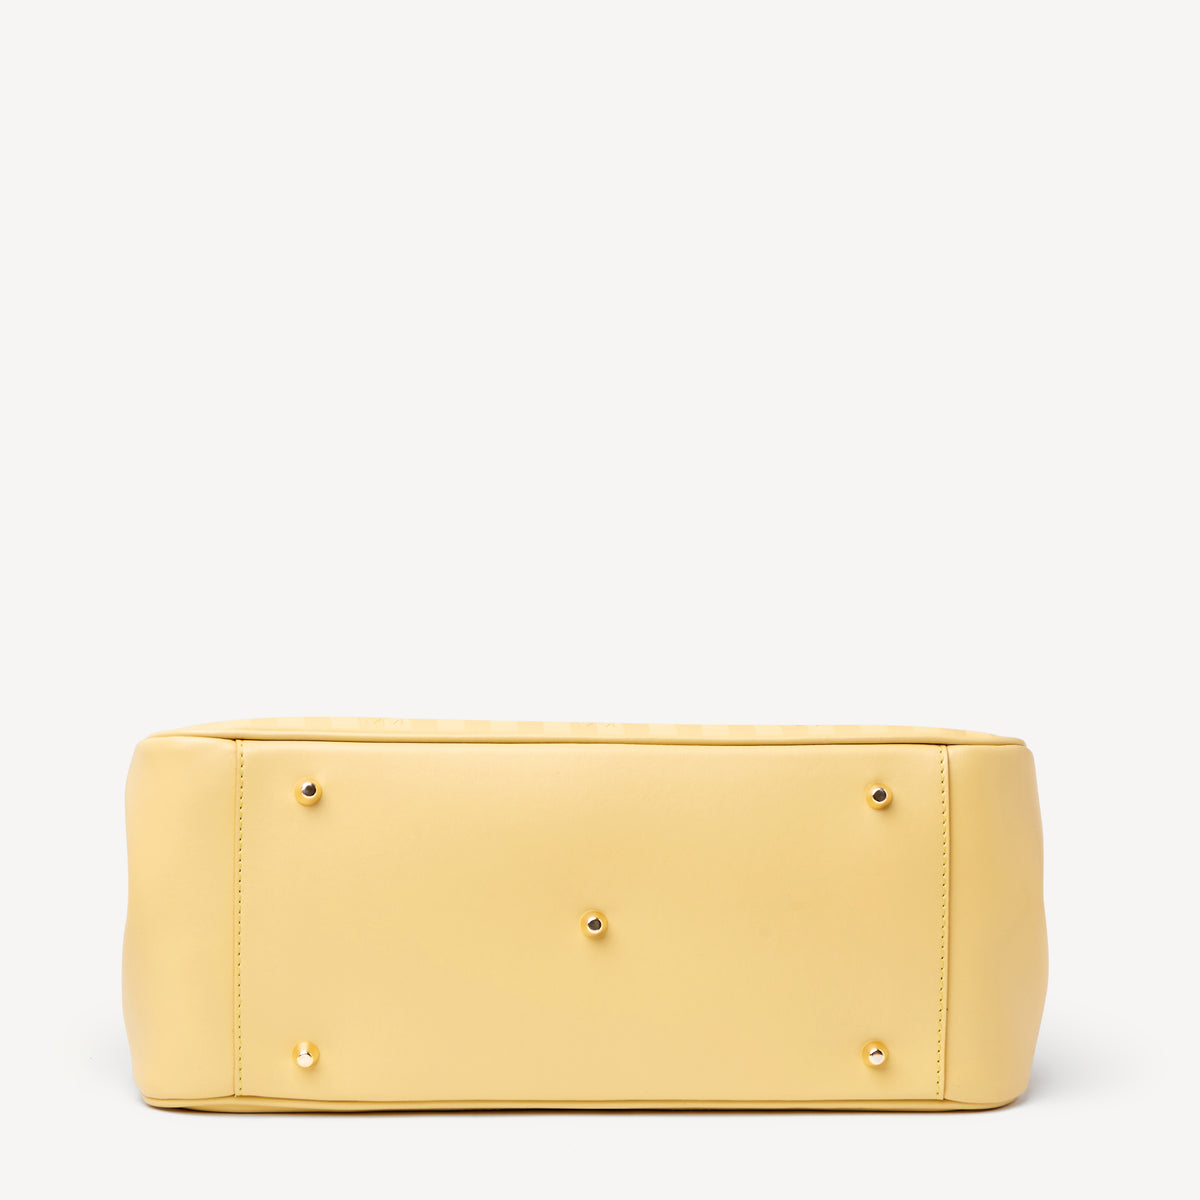 DONAT | Handtasche ginger gelb/gold- VON UNTEN